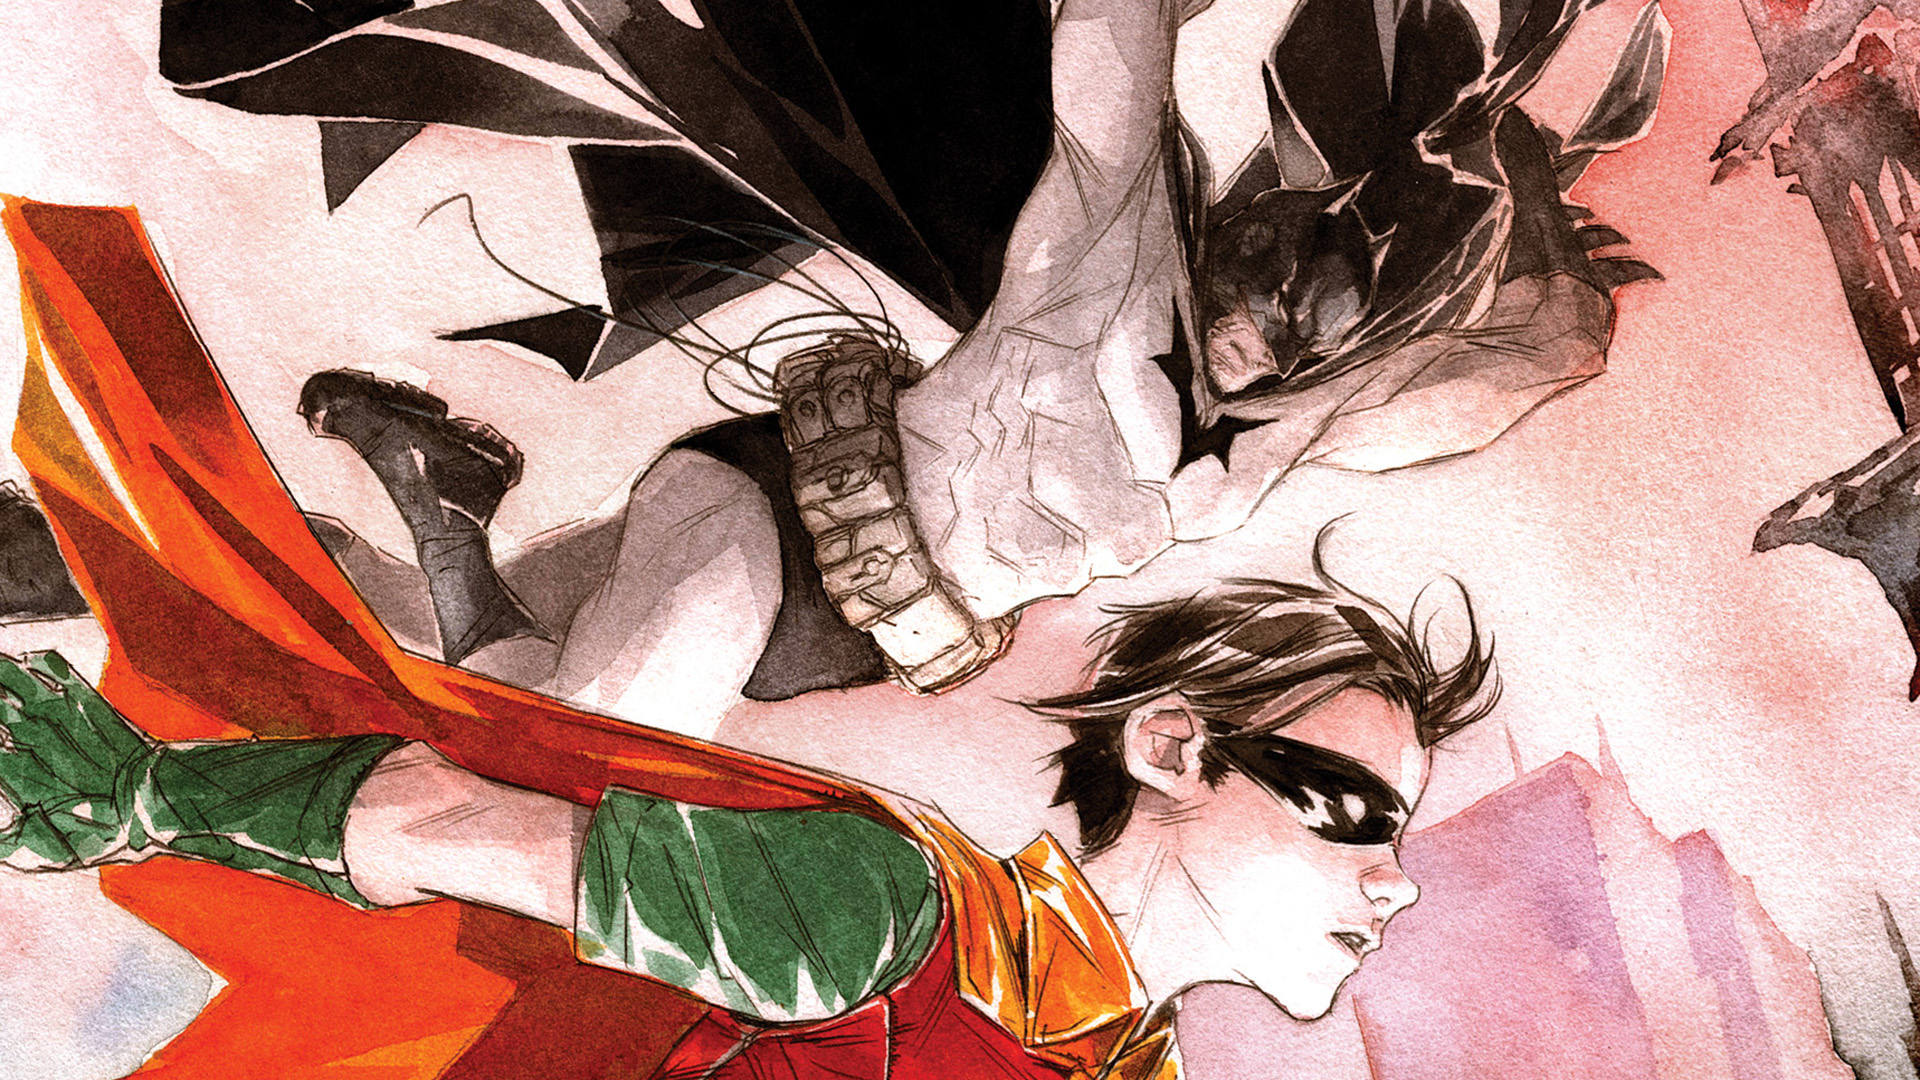 Robin ve Batman #1